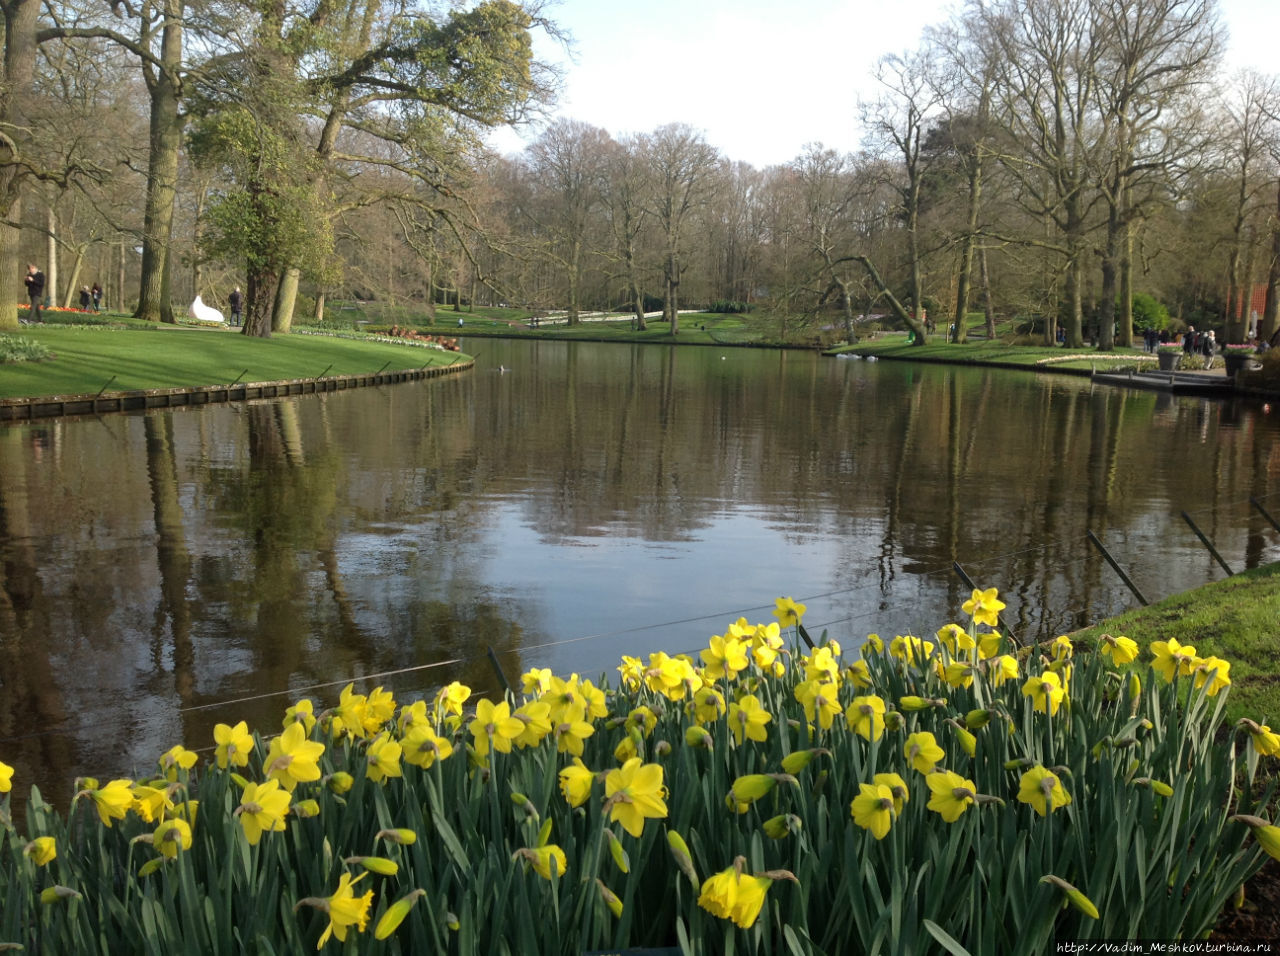 Парк Кекенхоф расположен на 32 гектарах, в нем есть не только тюльпаны, но и гиацинты, нарциссы и другие весенние цветы. Кёкенхоф, Нидерланды